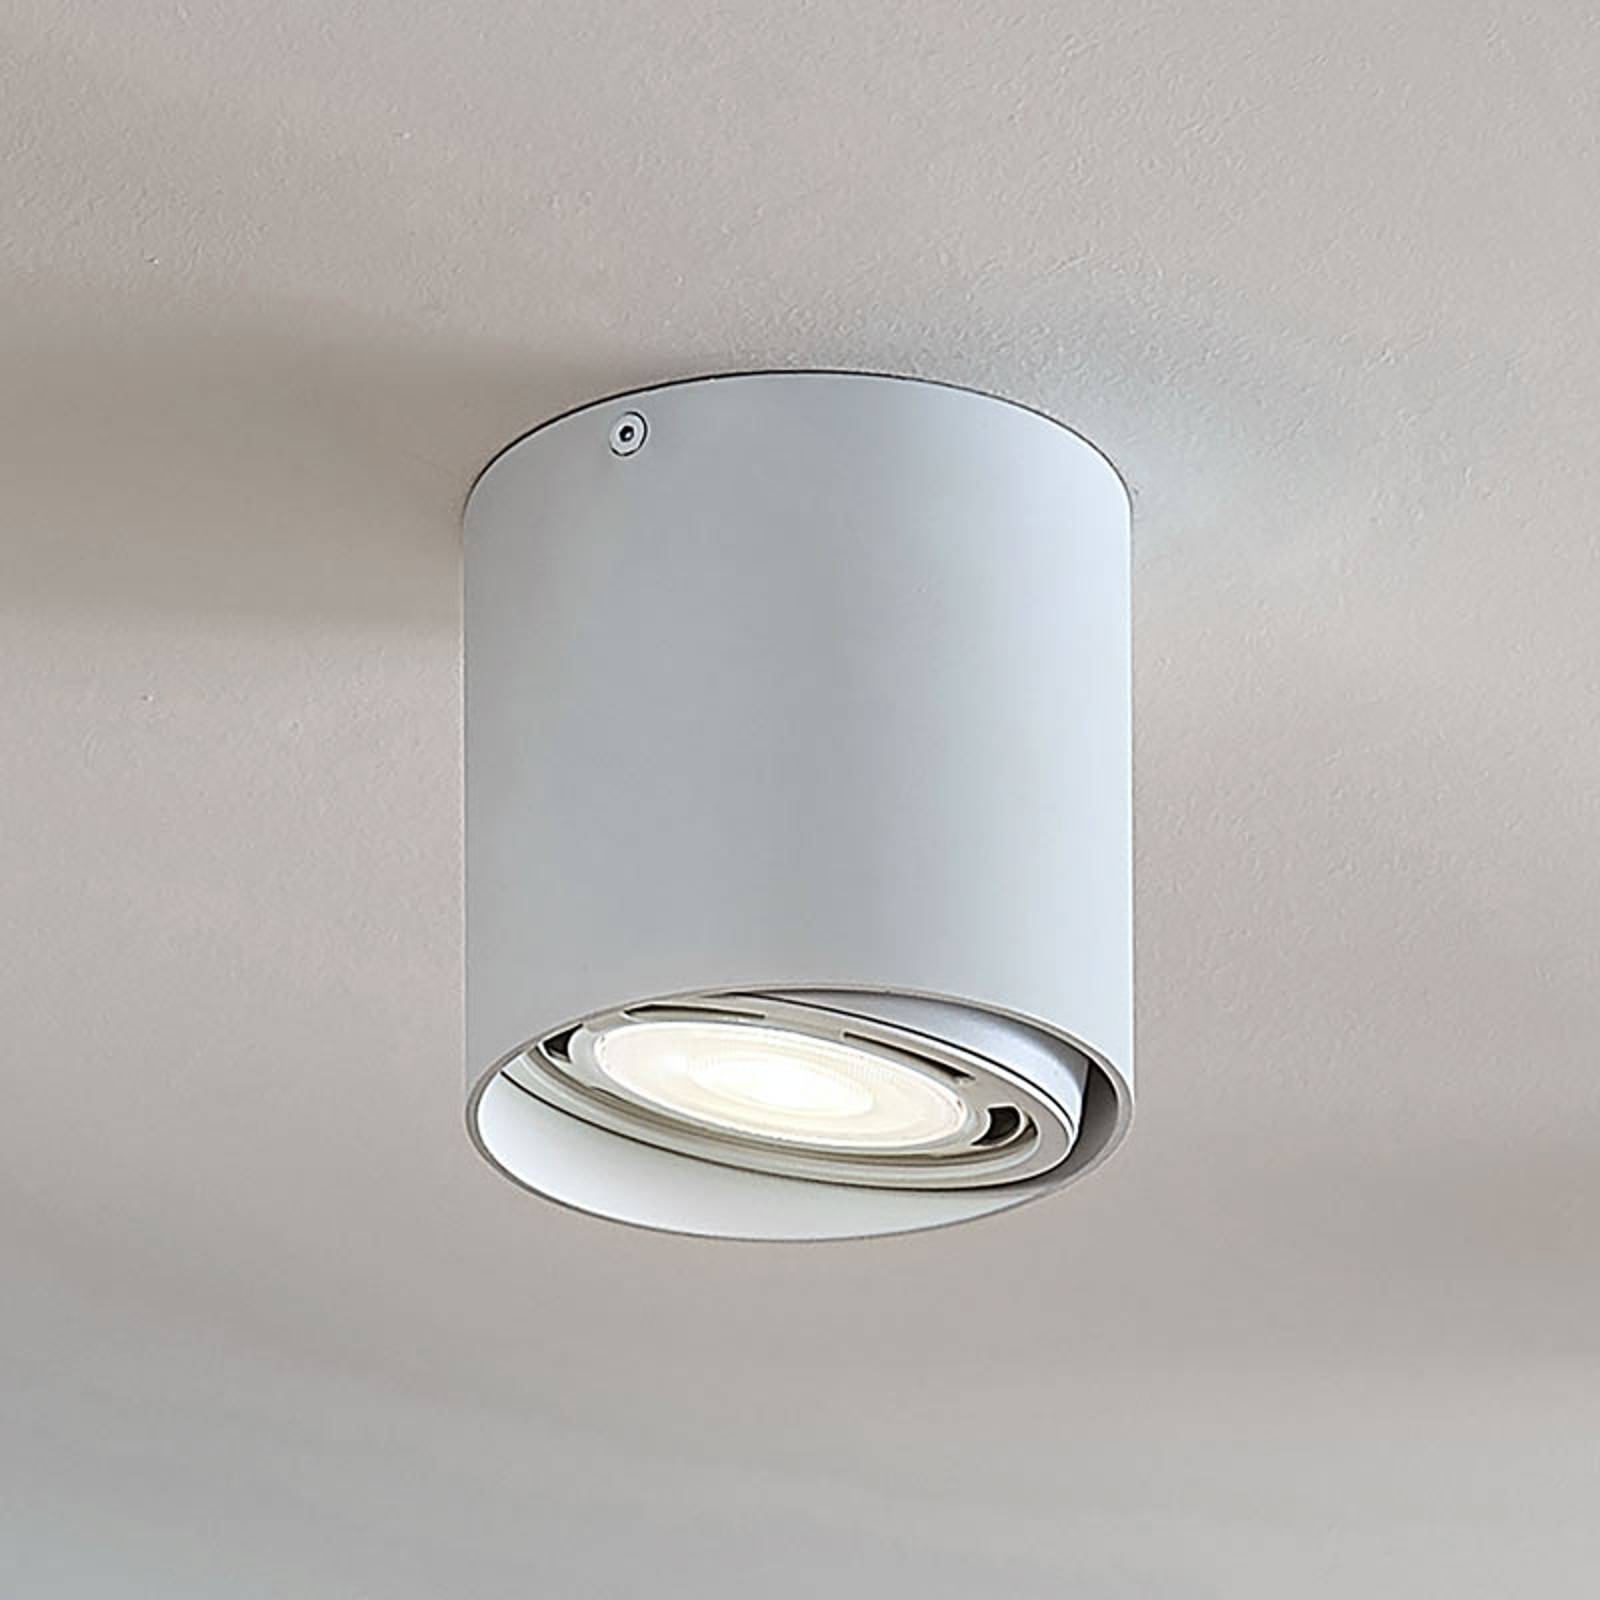 LED-alasvalo Rosalie 1-lamp., pyöreä, valkoinen